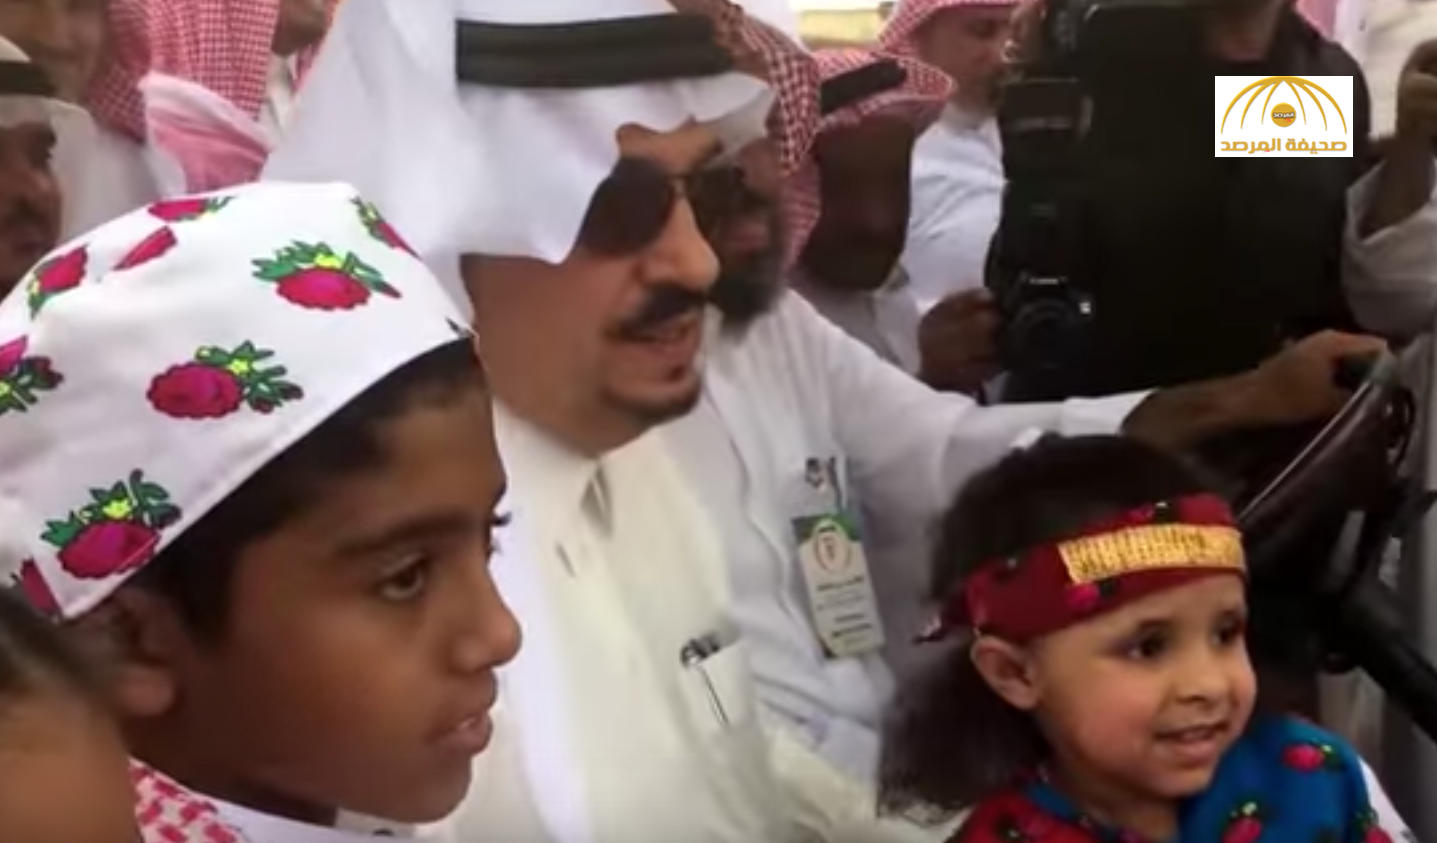 بالفيديو: طفل يرفض النزول من عربة أمير الرياض في السوق الشعبي في شقراء